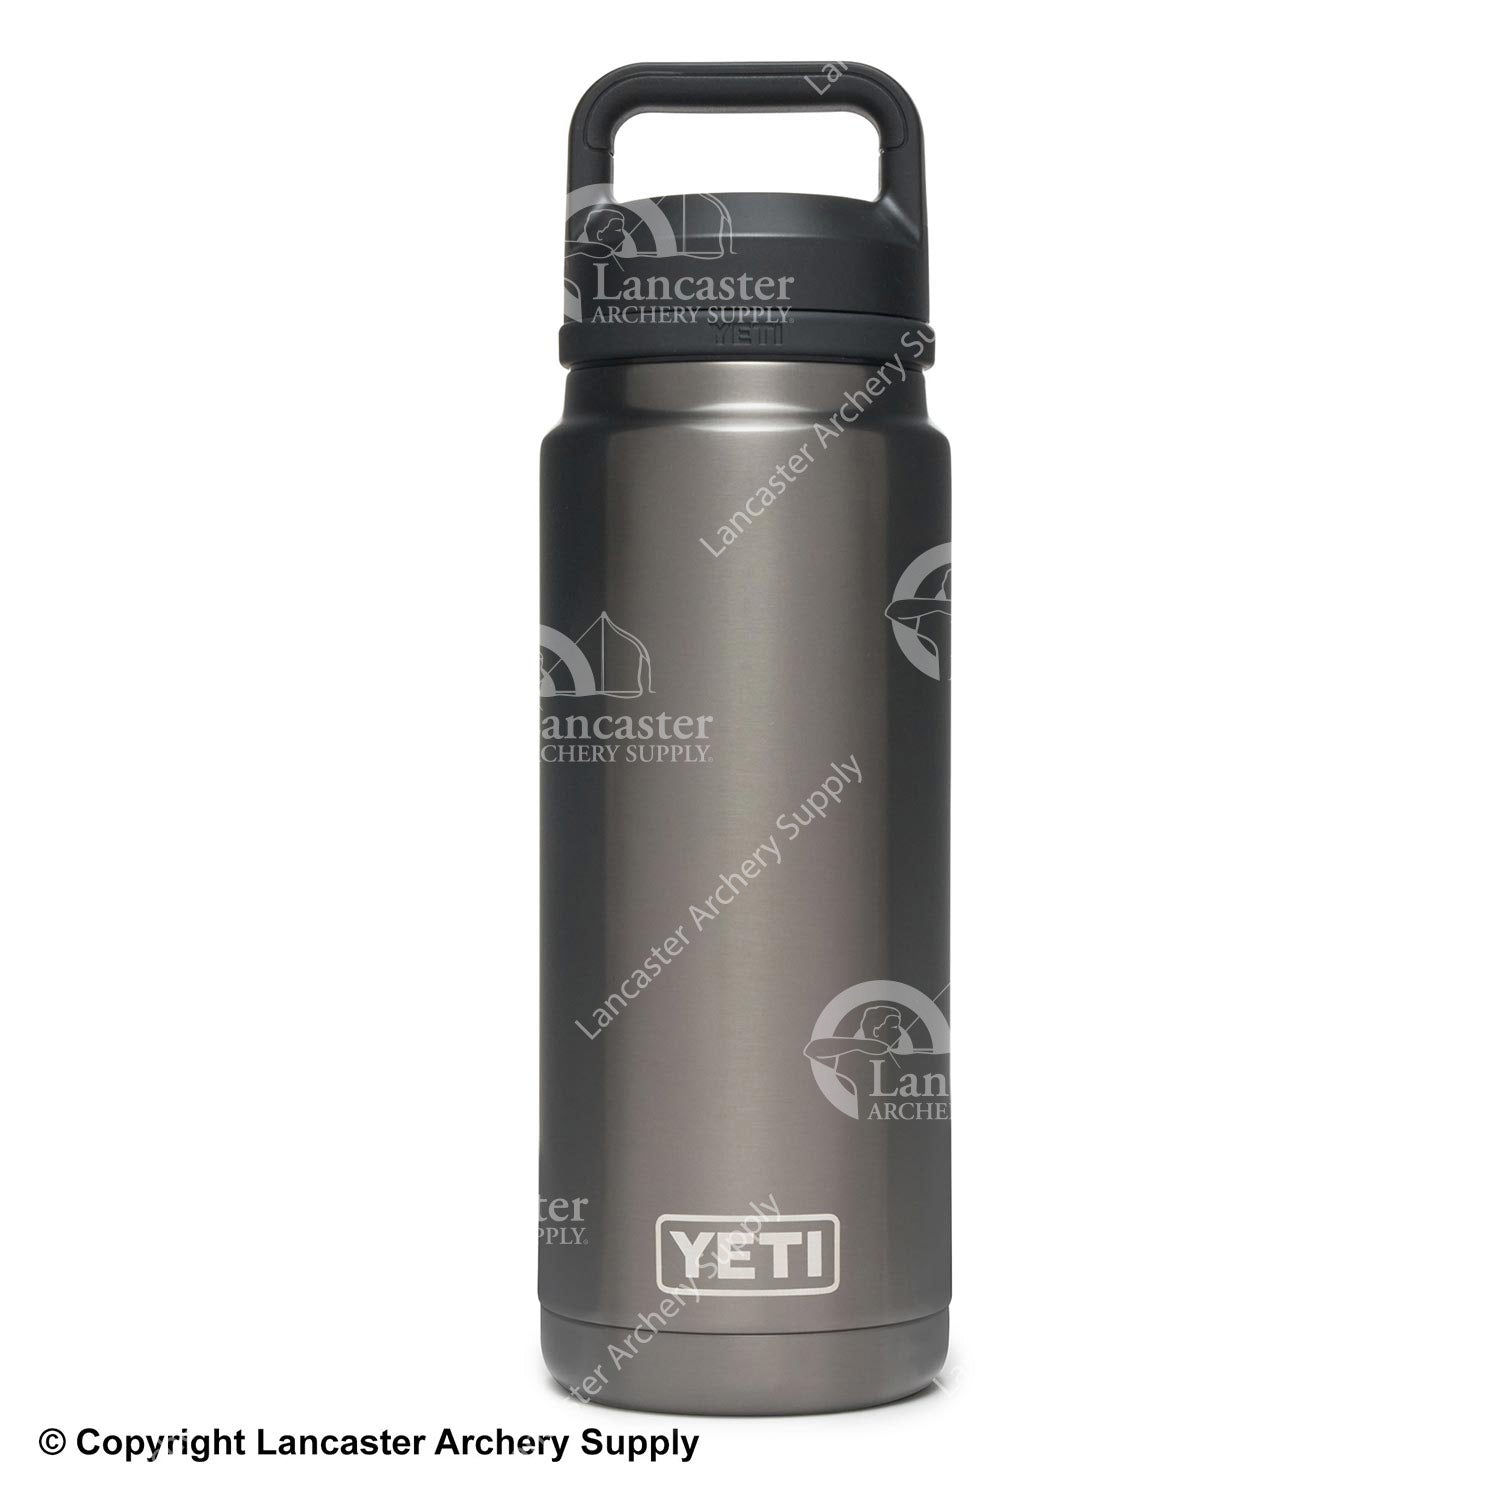 YETI-RAMBLER 26 OZ BOTTLE BLACK - Vacuum bottle